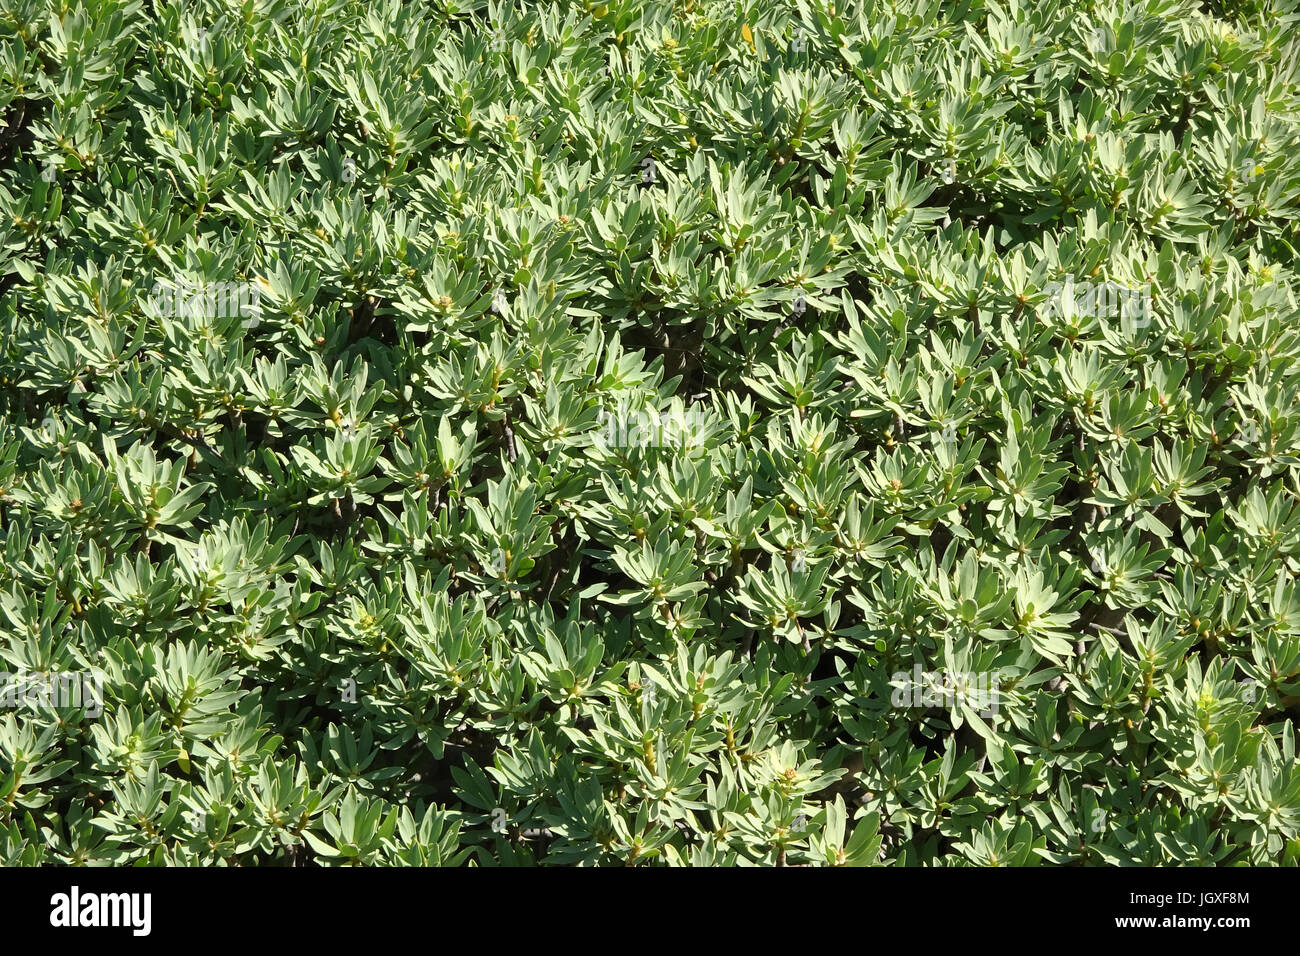 Tabaibastraeucher wachsen auf einem Lavafeld, Tabaiba dulce, Balsam-Wolfsmilch (Euphorbia balsamifera), Kuestenvegetation bei El Golfo, Lanzarote, Kan Stock Photo